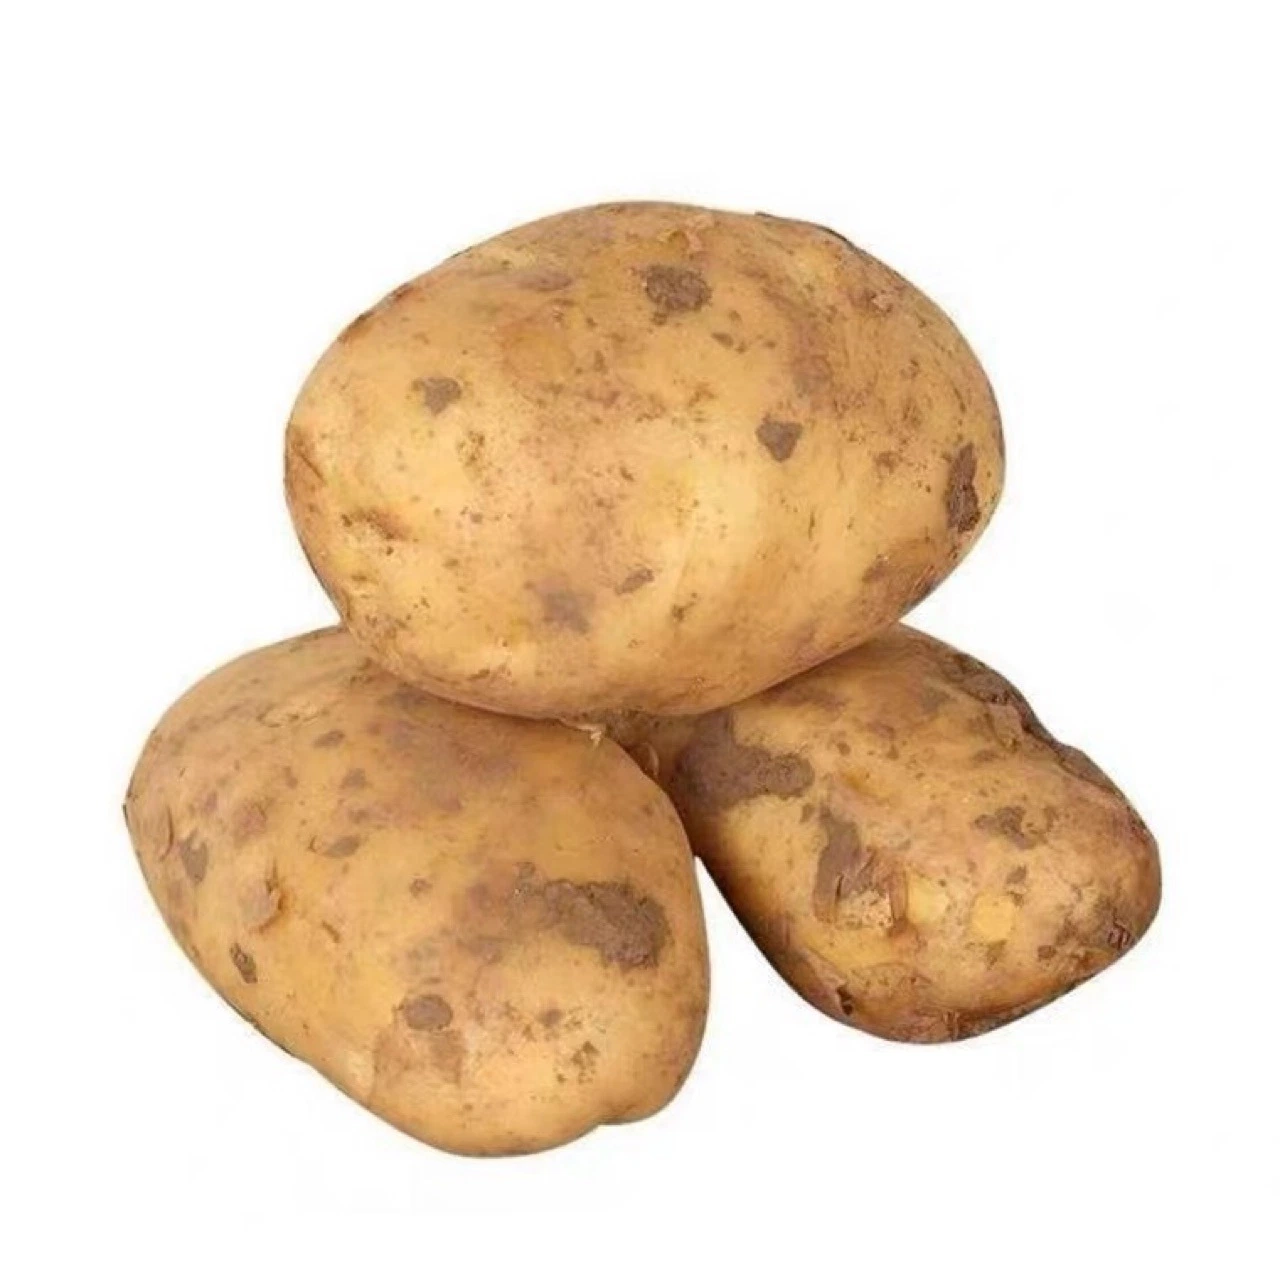 Neue Saison Kartoffel Großhandel/Lieferant Frische Kartoffel China Gemüse Export